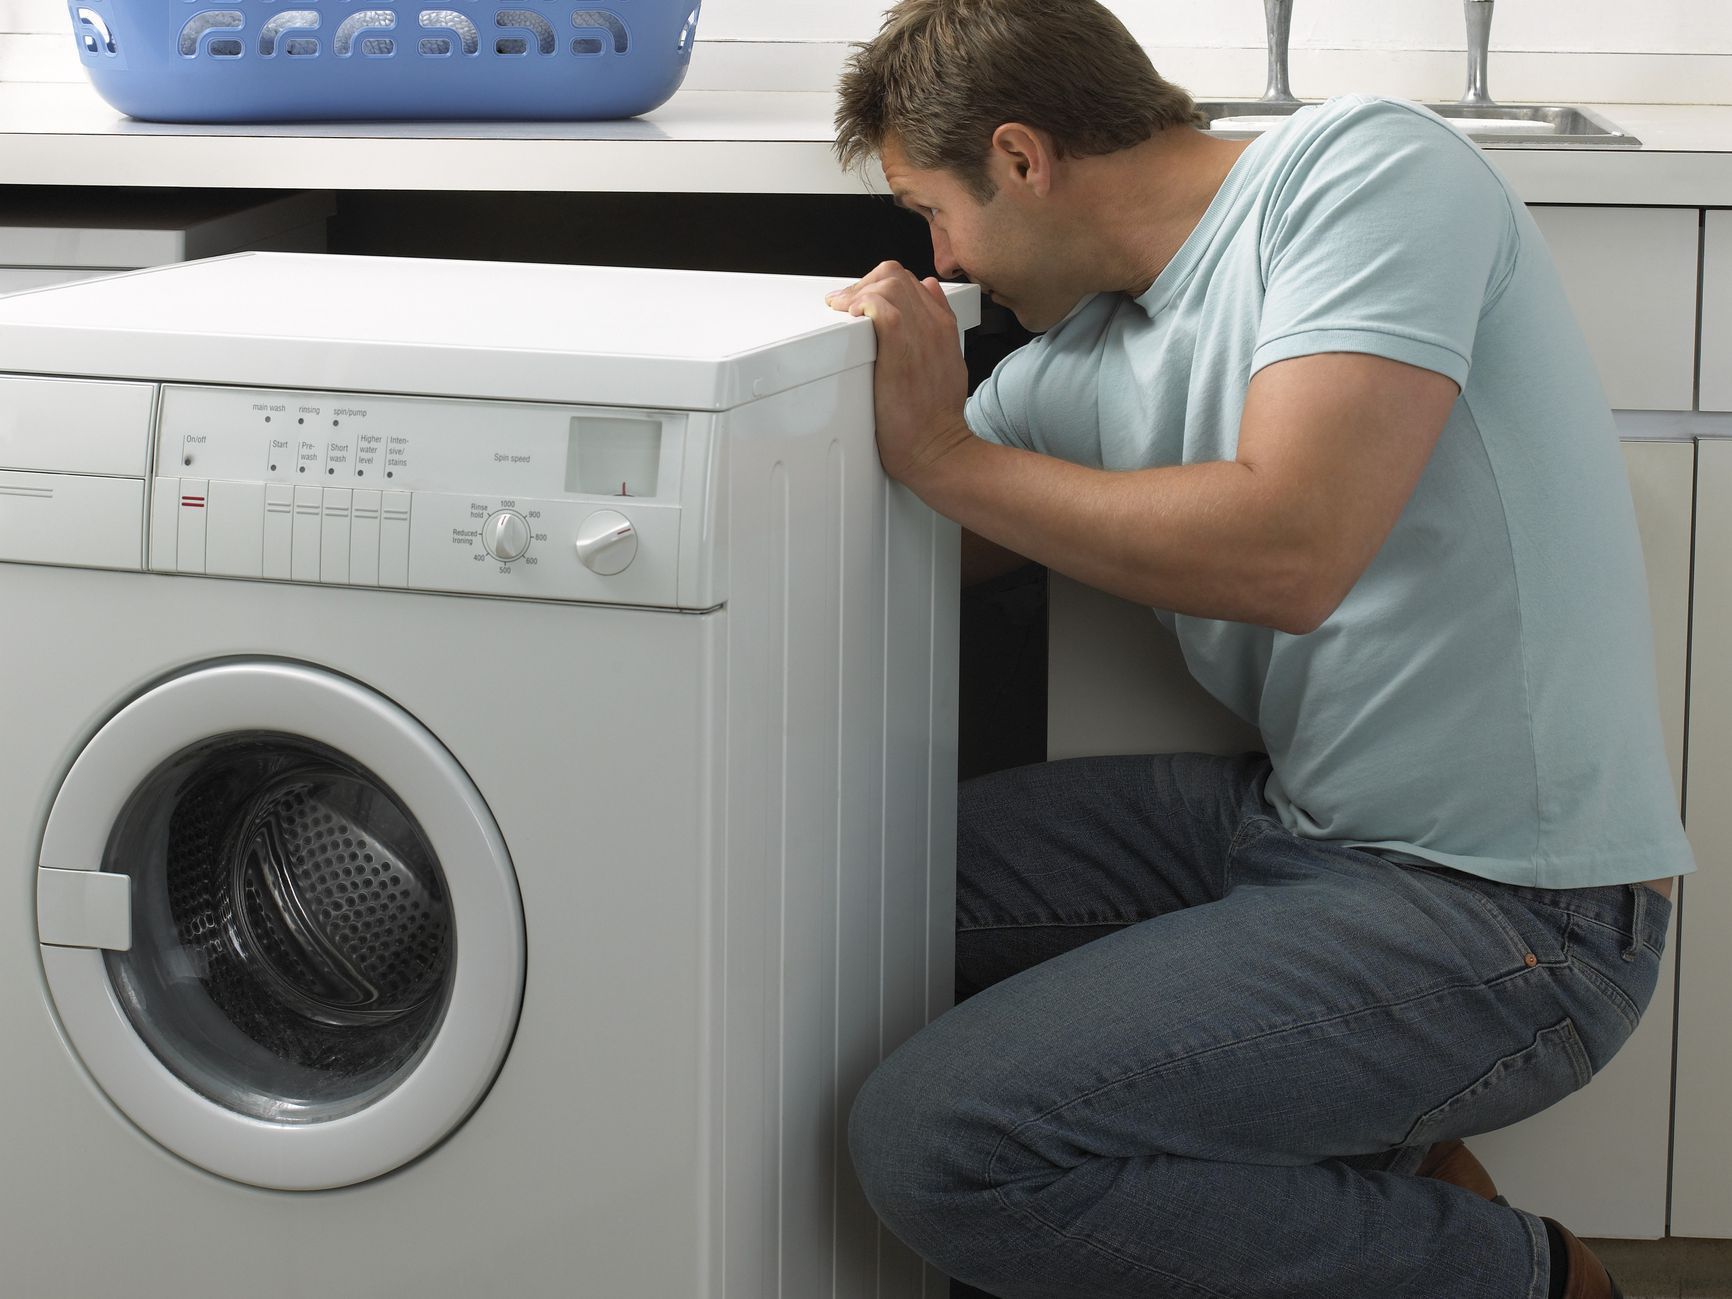 Dù bạn đã cố khắc phục, nhưng hiện tượng máy giặt không xoay vẫn tiếp diễn, hãy liên hệ ngay Điện Lạnh Sapa để được sửa chữa kịp thời